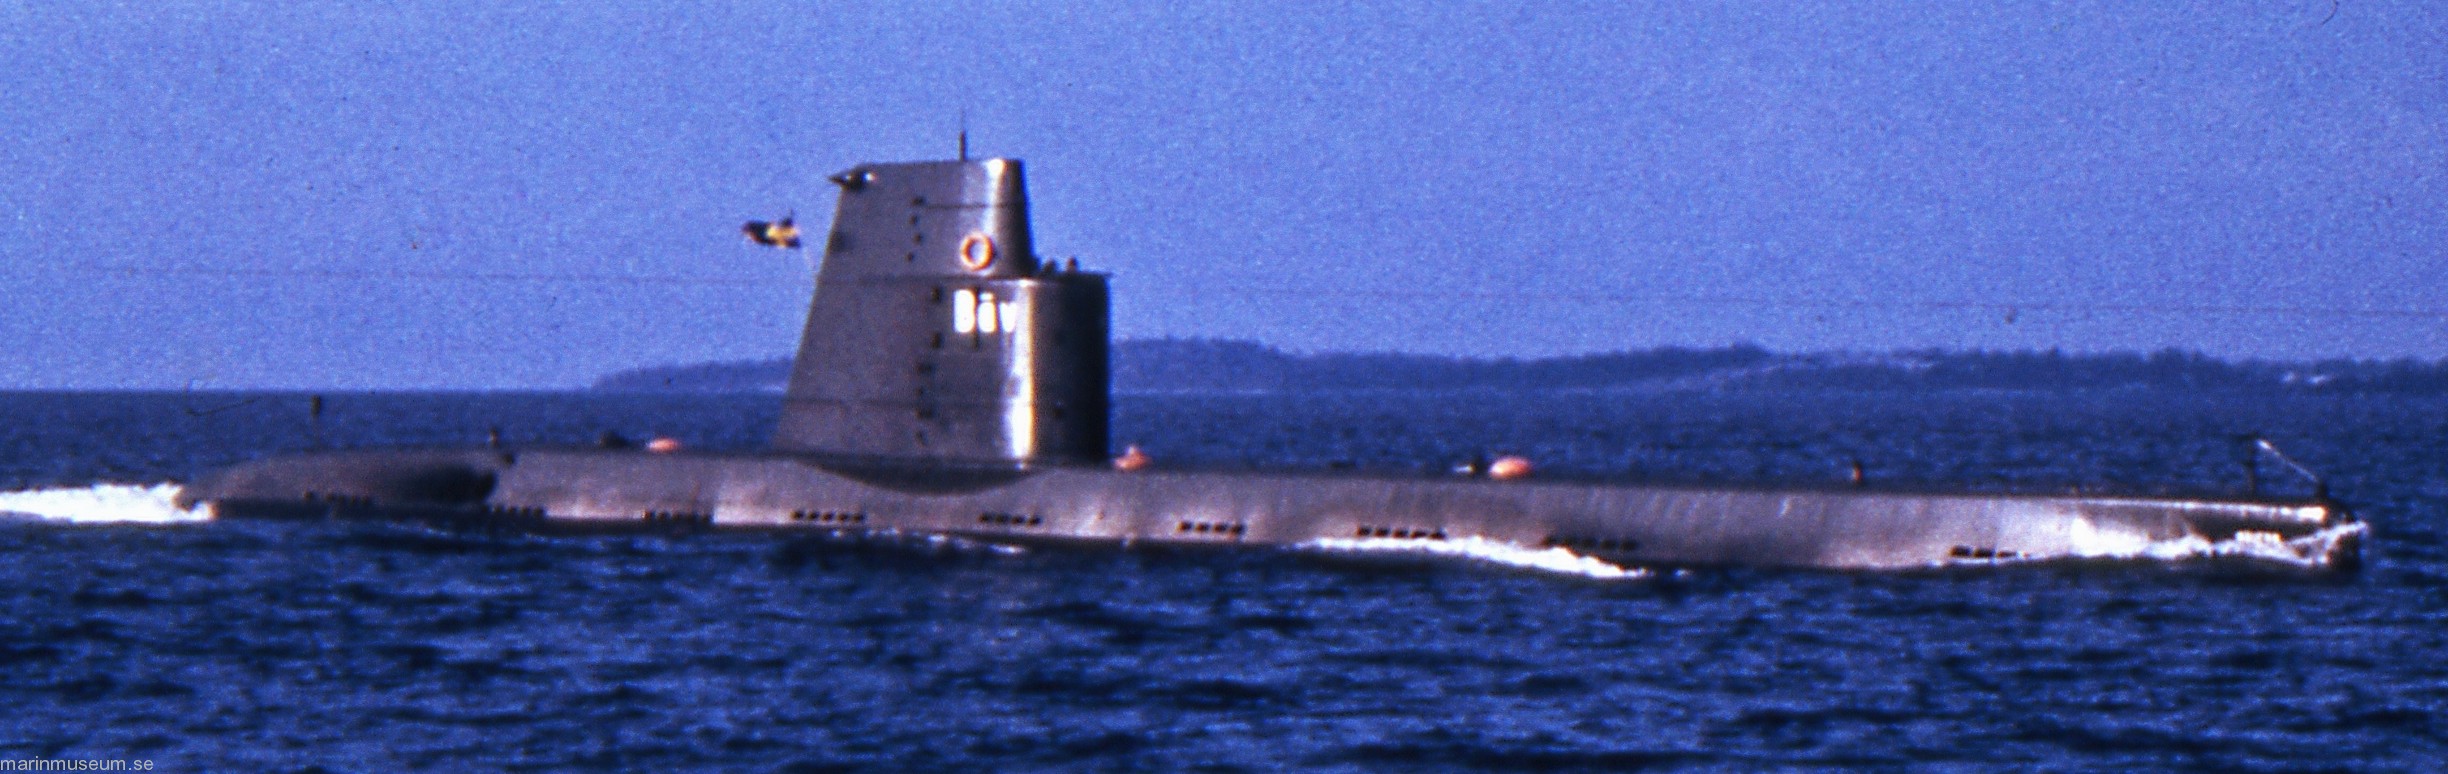 hms hswms bävern hajen a10 class attack submarine ubåt swedish navy svenska marinen försvarsmakten 04